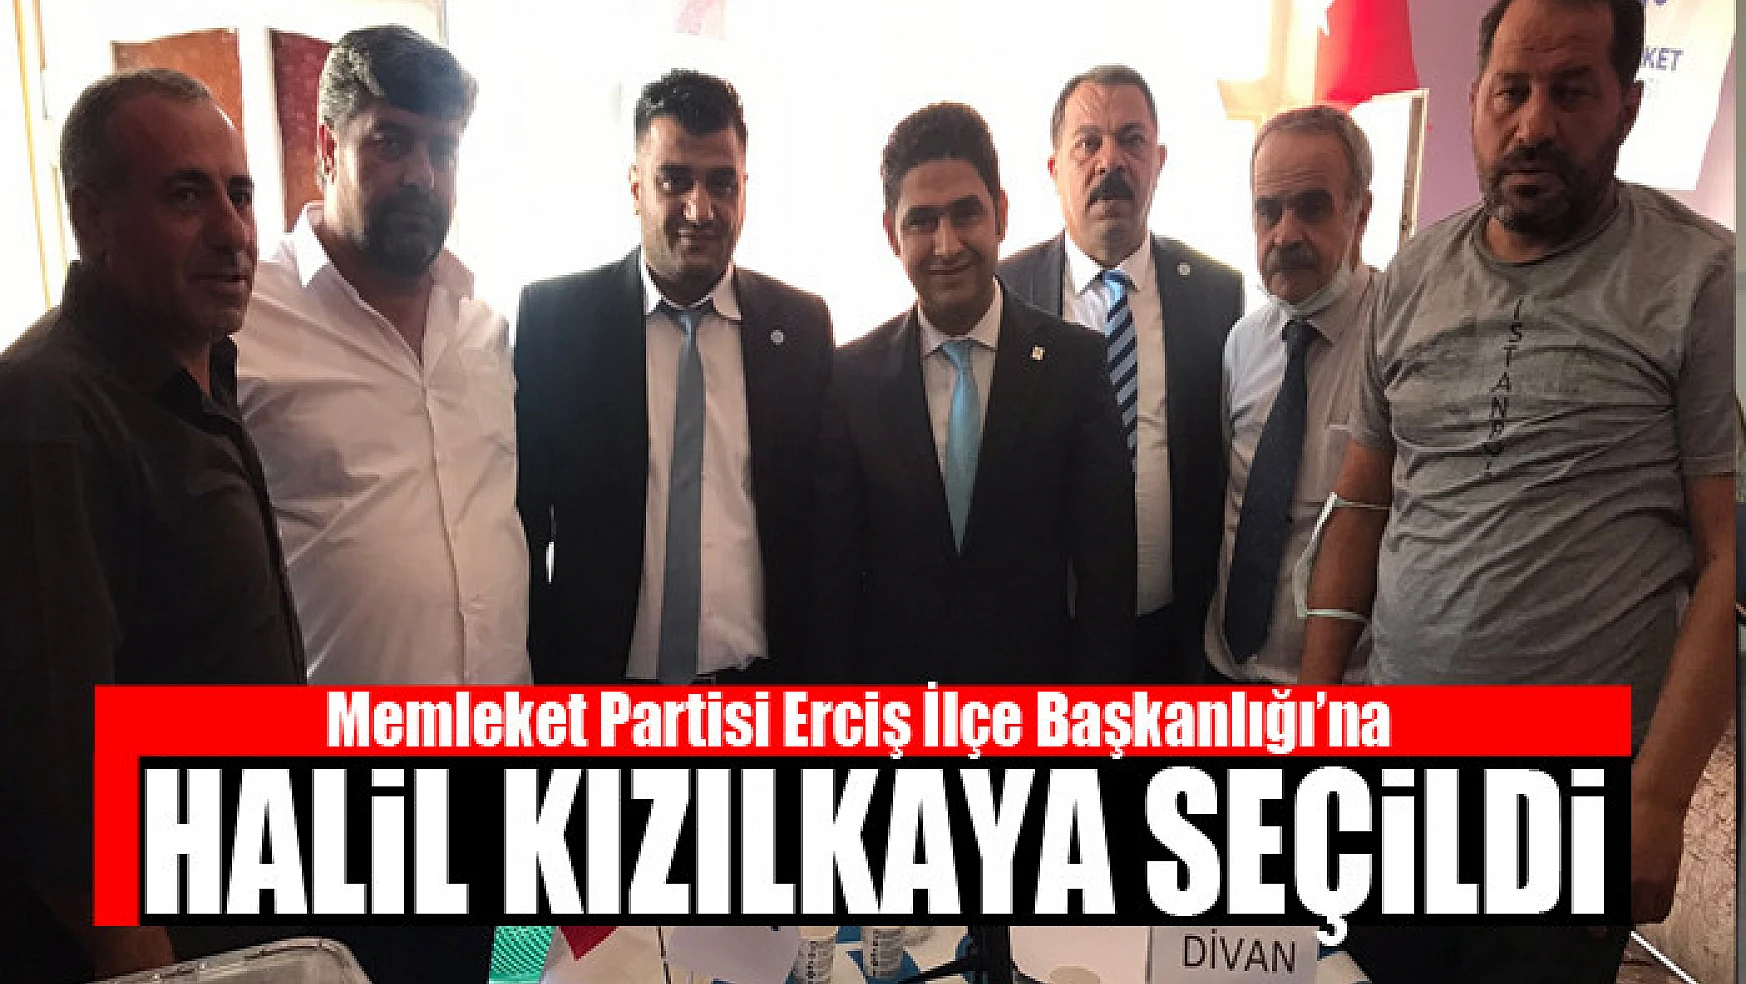 Memleket Partisi Erciş İlçe Başkanlığı'na Halil Kızılkaya seçildi